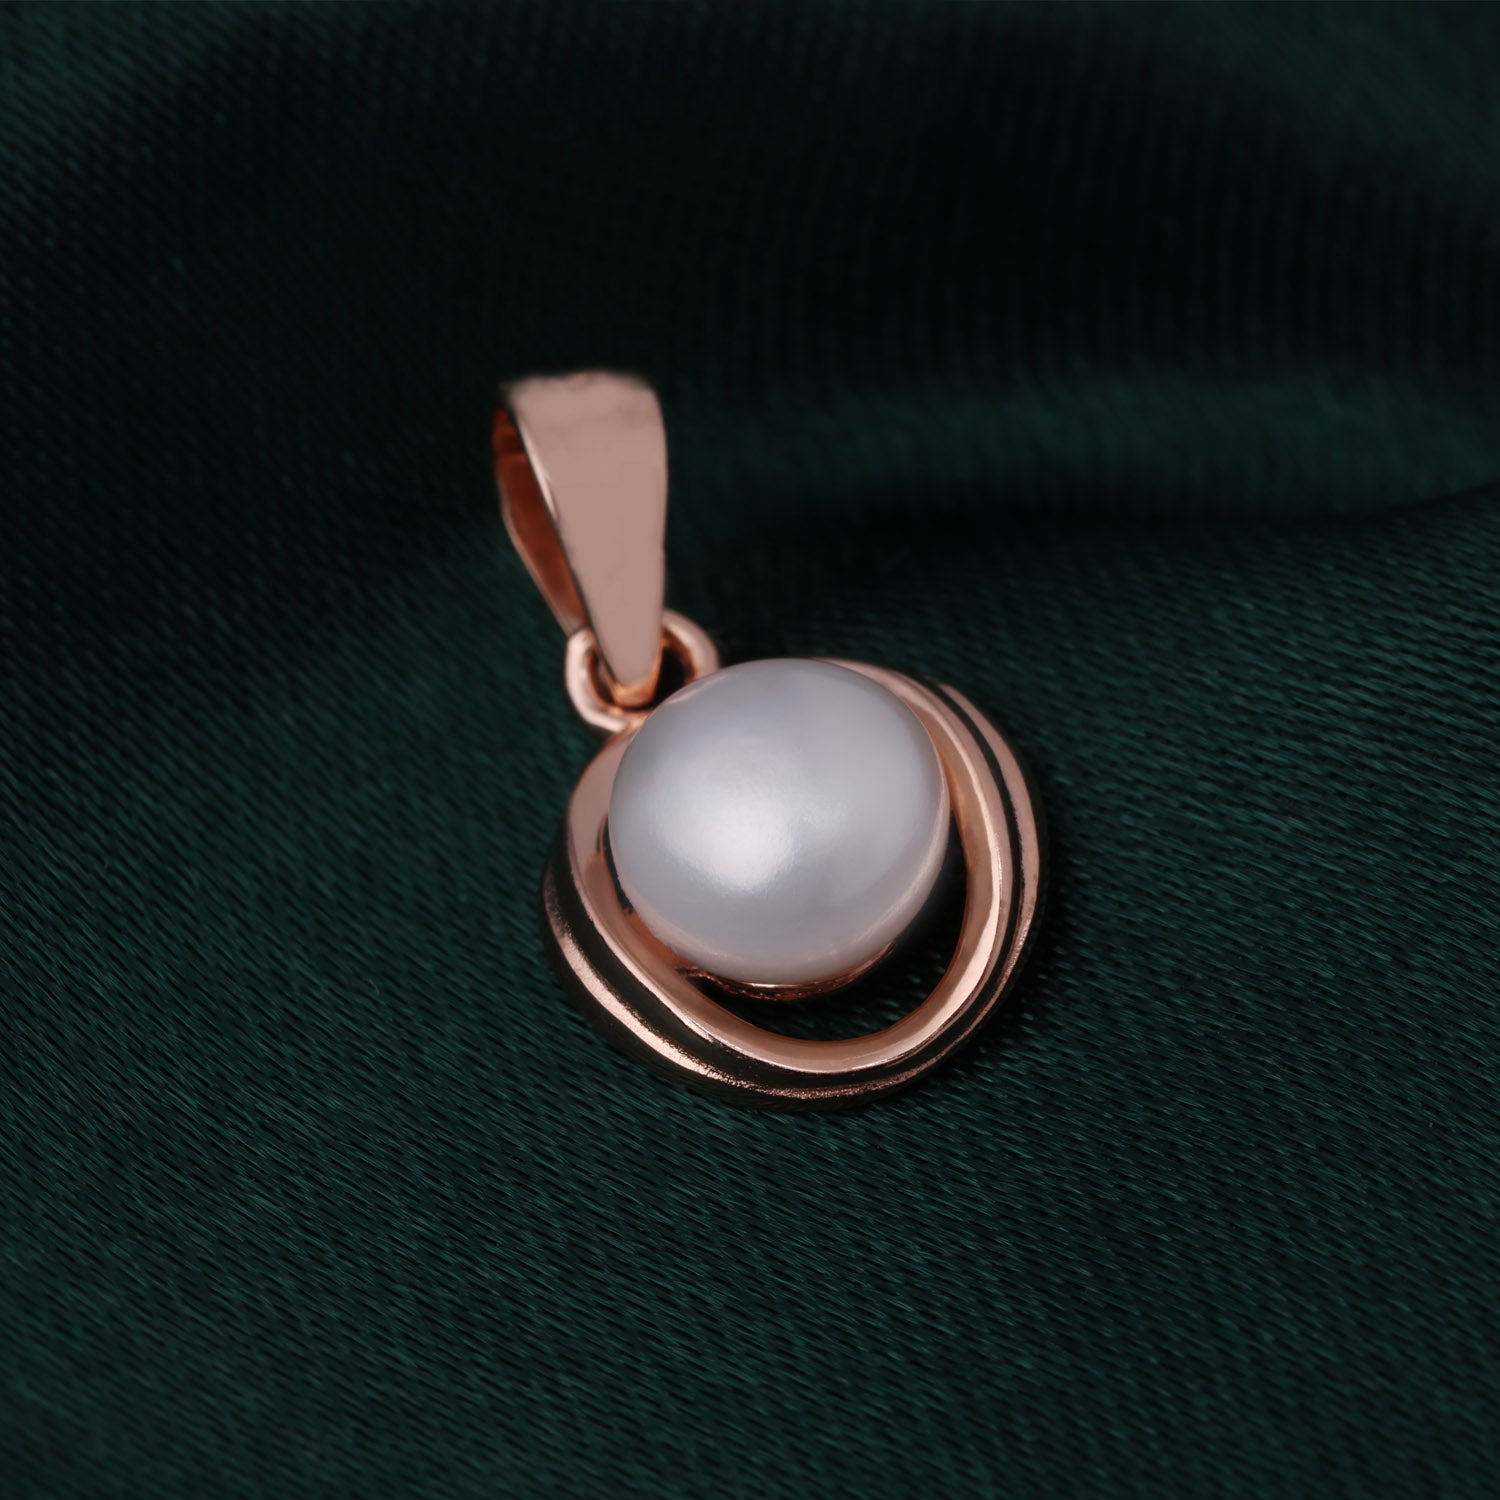 Pearl Drop Earrings with Sterling Silver | SKU : 0002930107